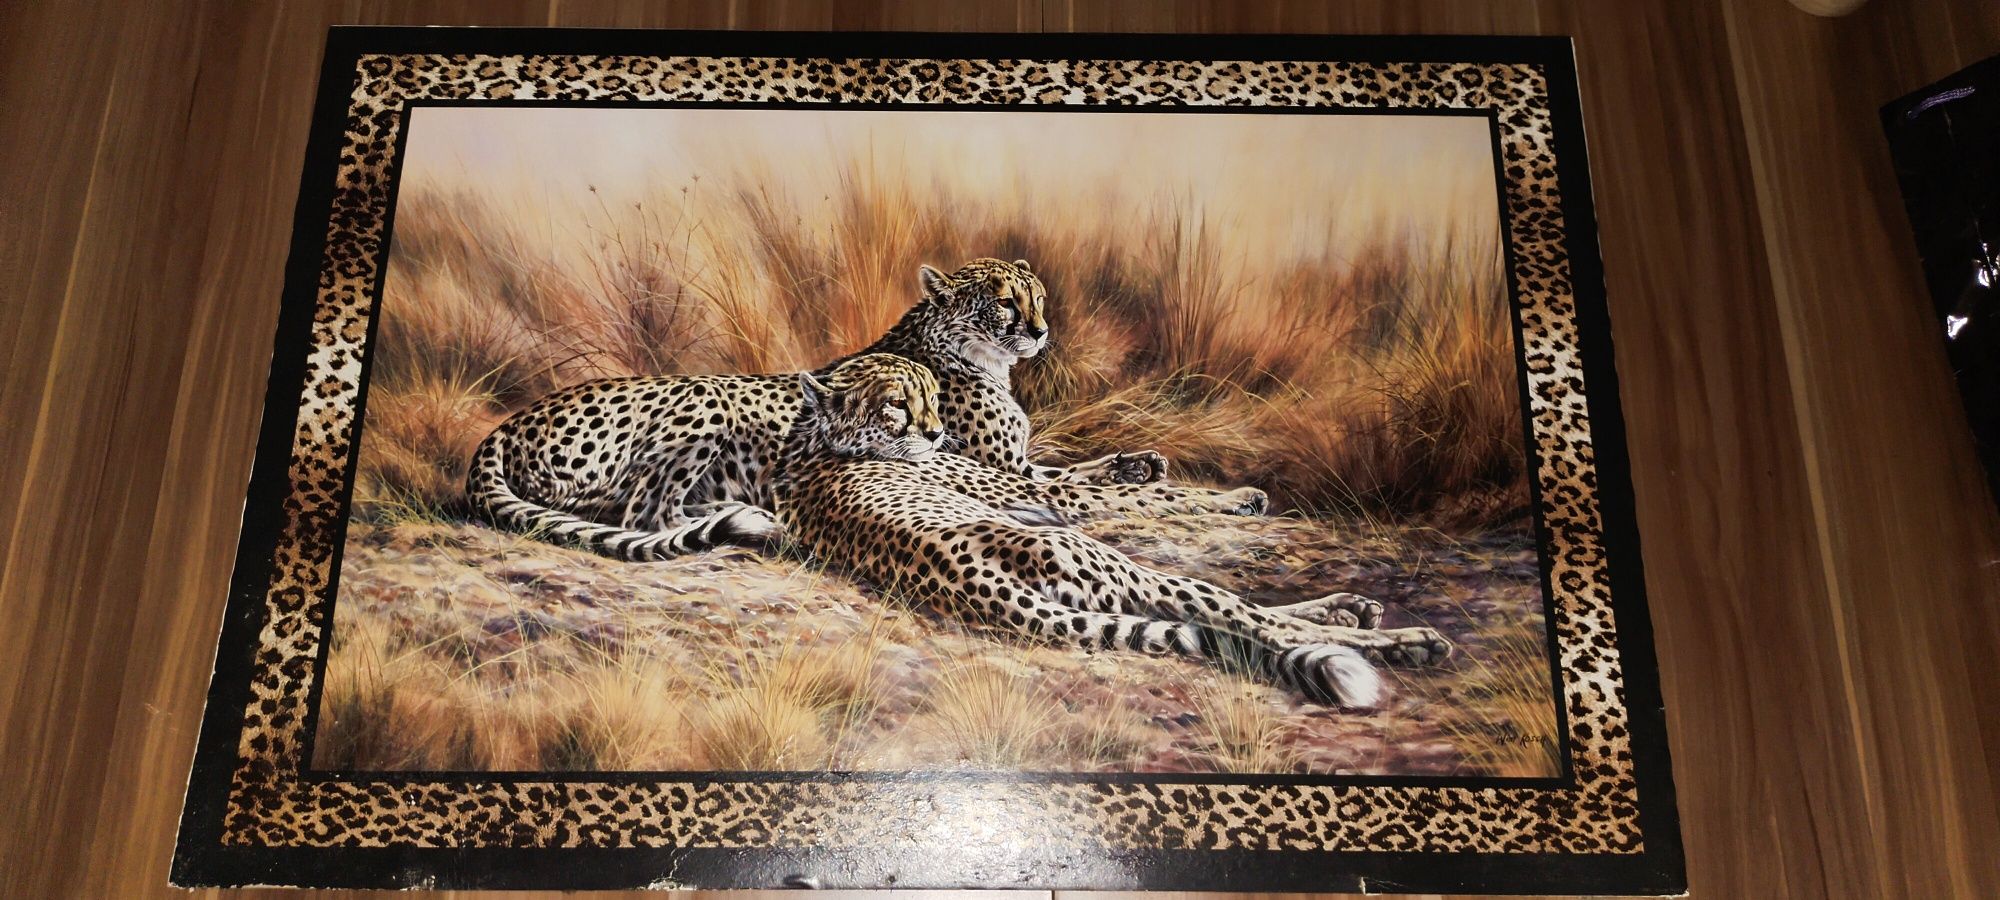 Obraz. dwa gepardy